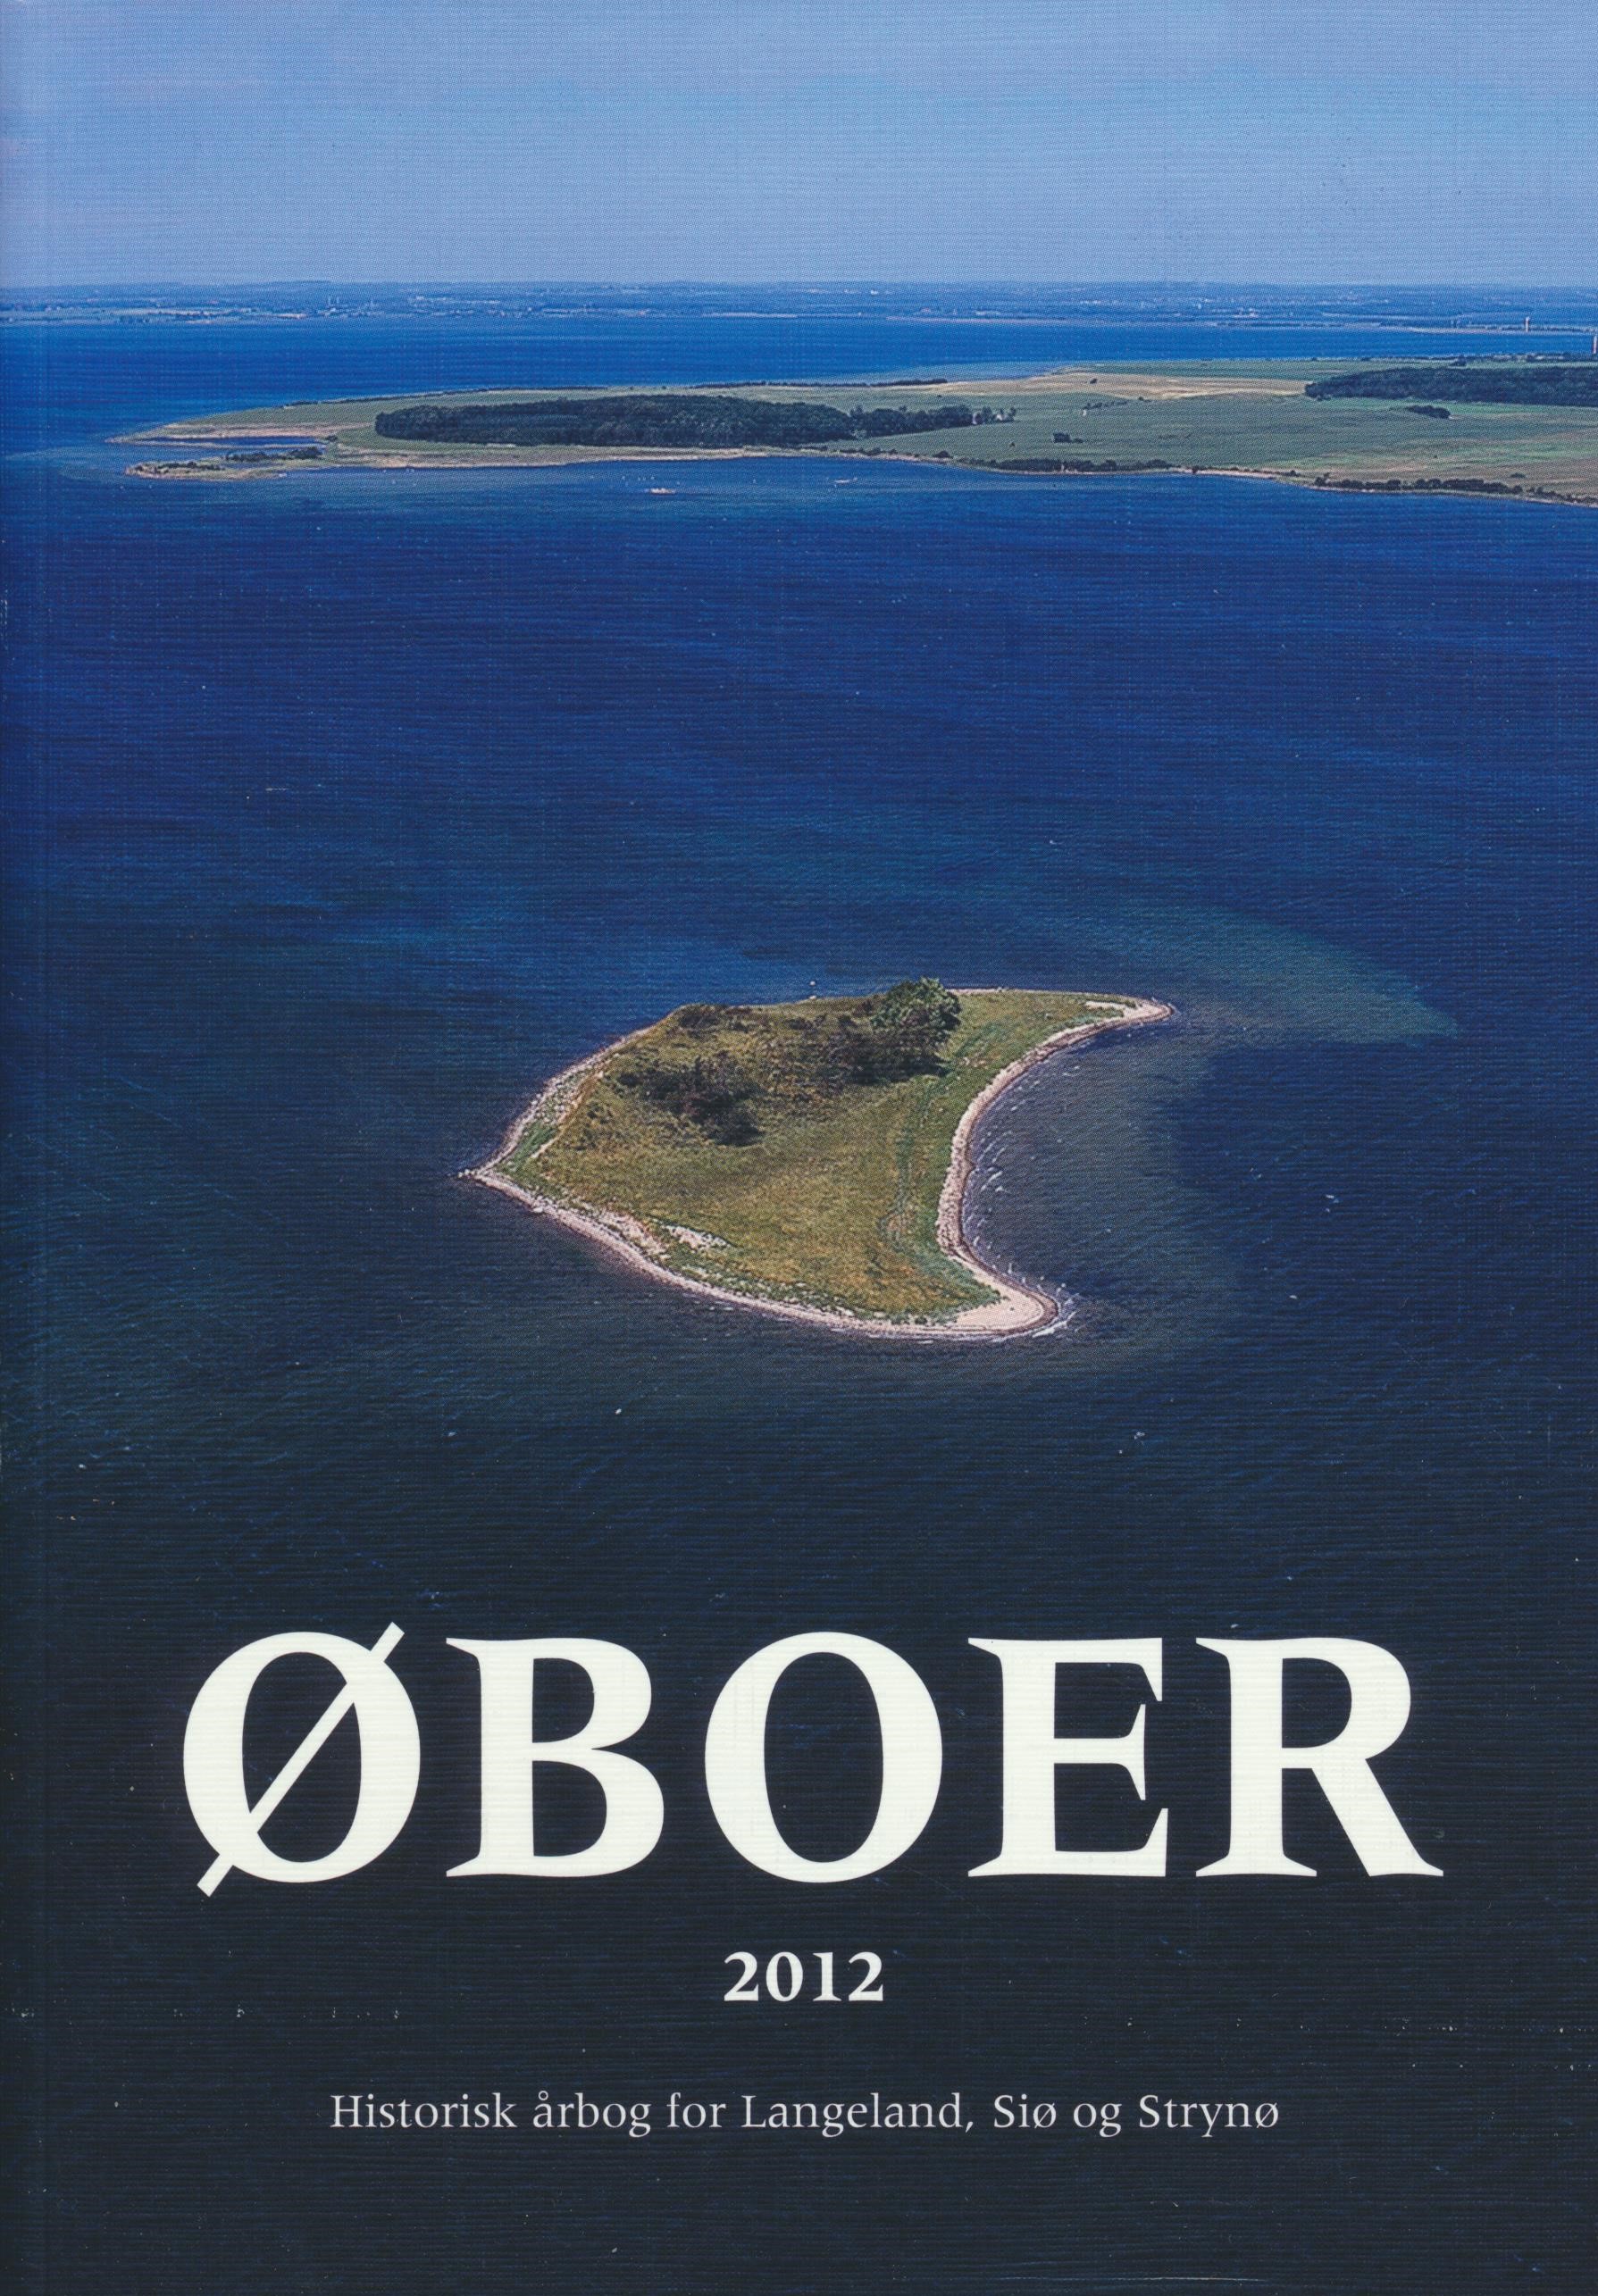 Oboer 2012